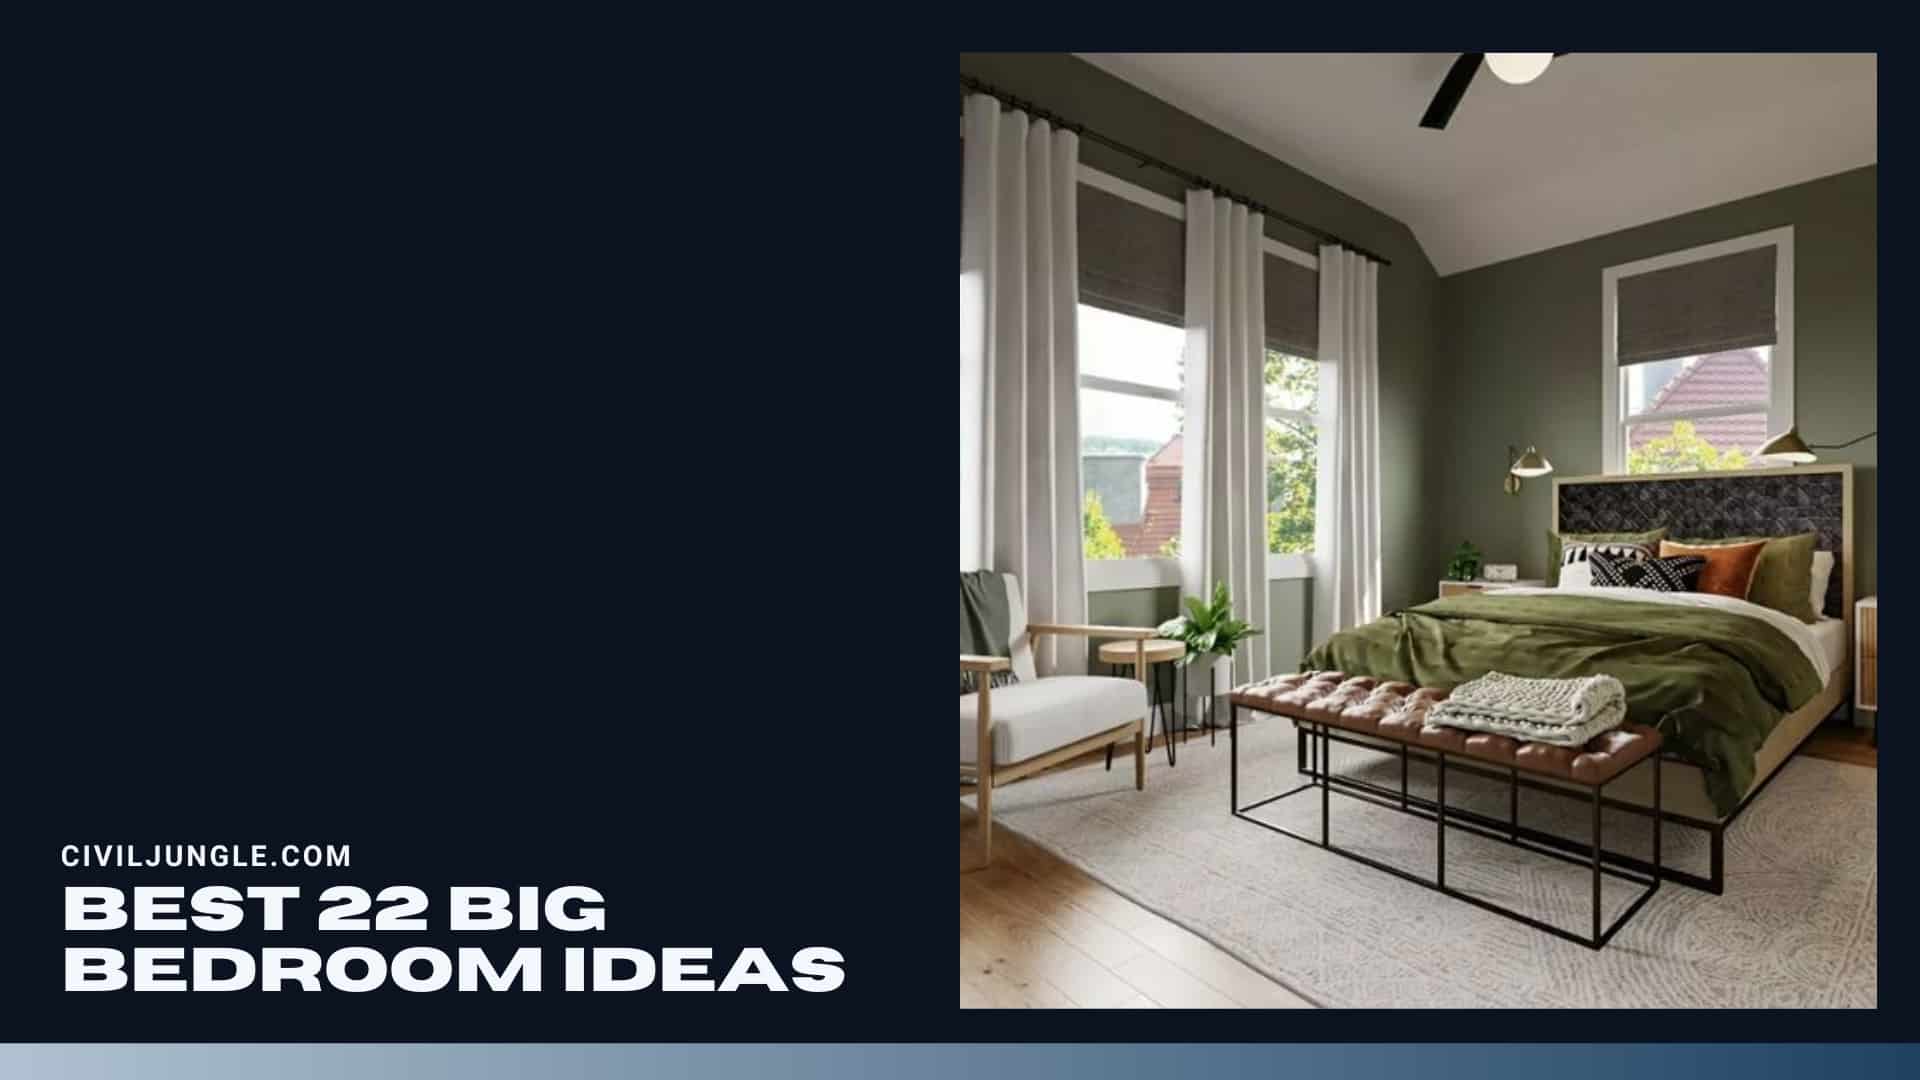 Best 22 Big Bedroom Ideas